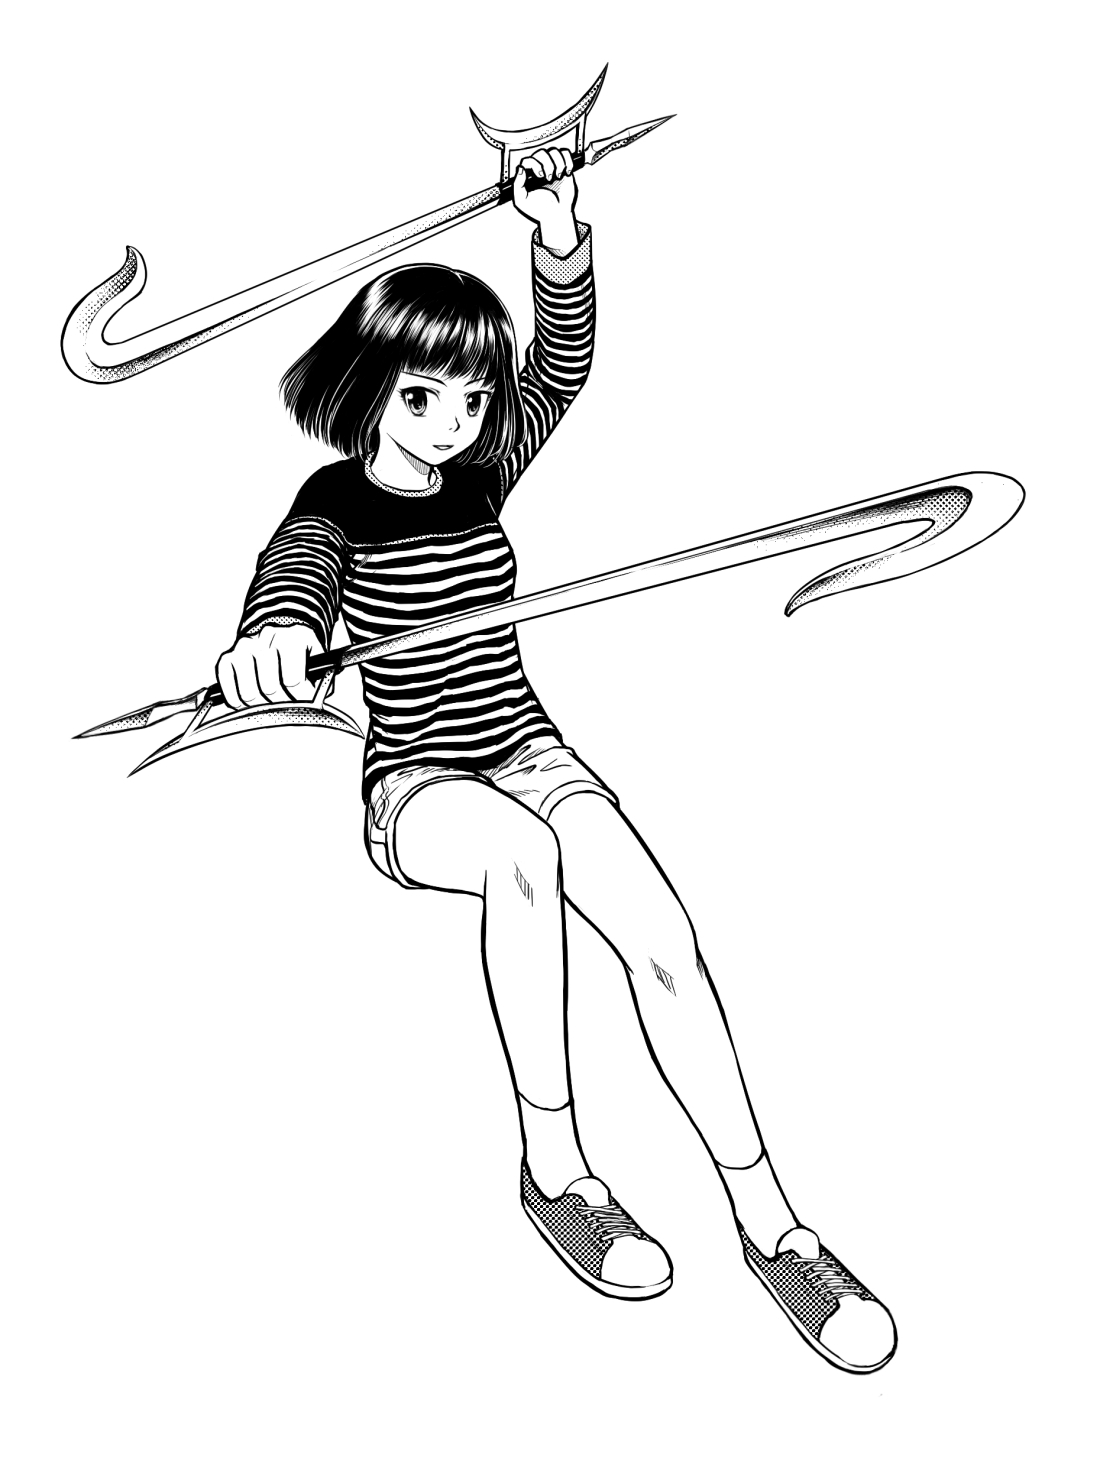 【武术漫画】(中国)剑,剑道第二弹,新欧剑与老欧剑,绳镖,双钩等